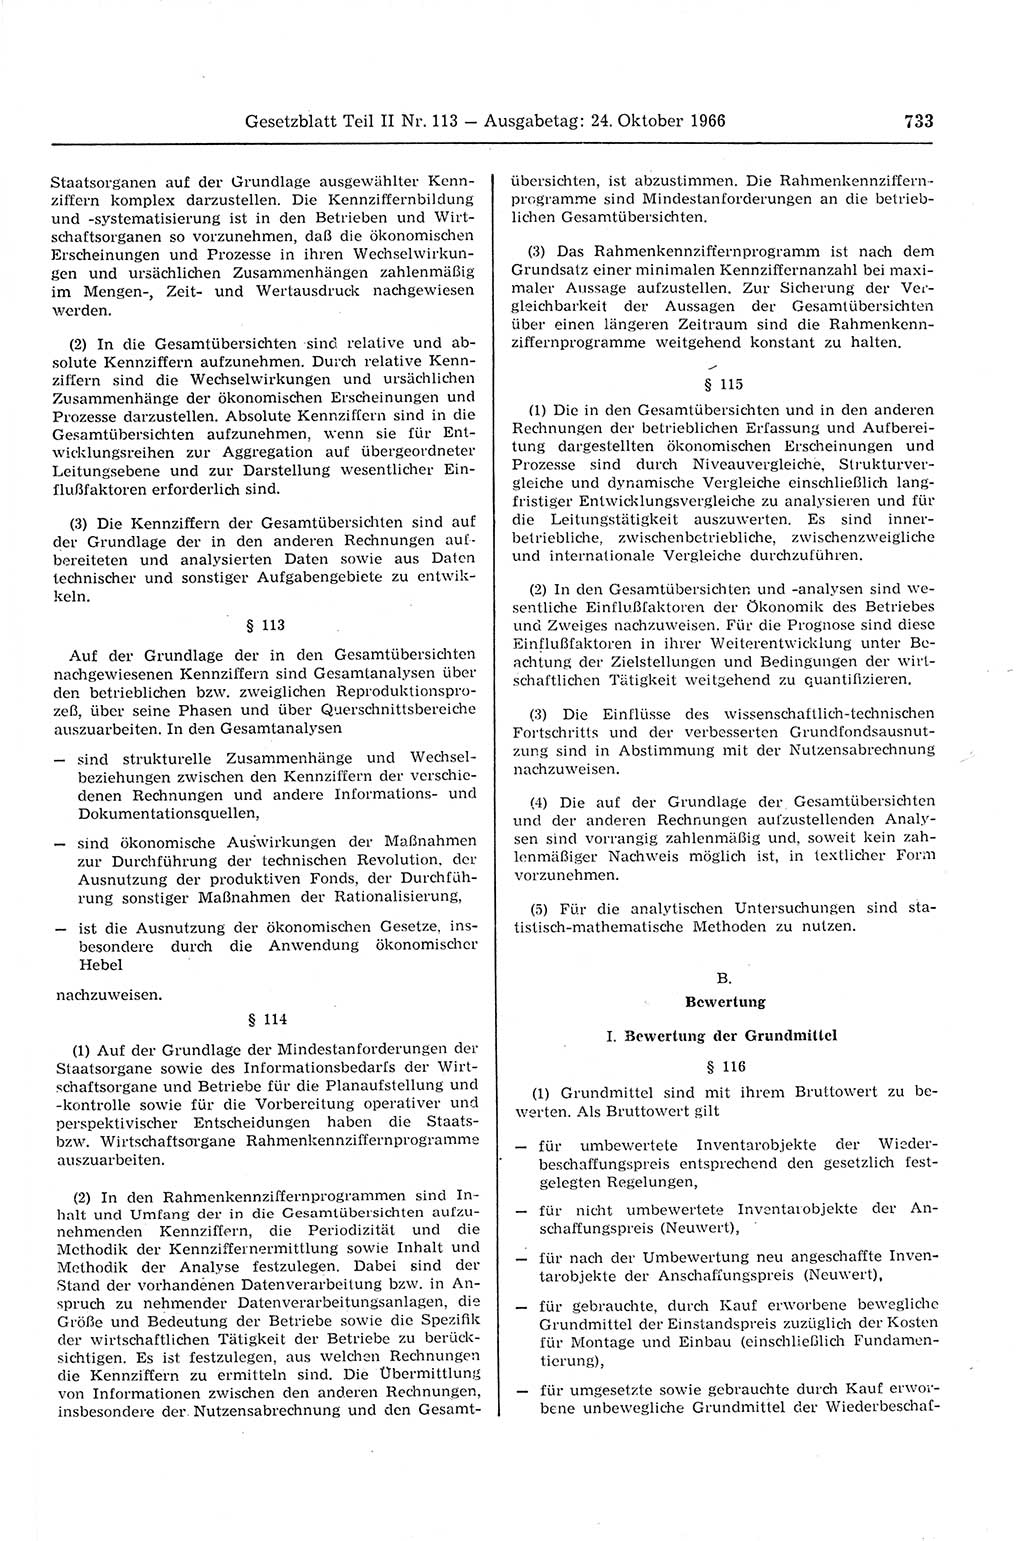 Gesetzblatt (GBl.) der Deutschen Demokratischen Republik (DDR) Teil ⅠⅠ 1966, Seite 733 (GBl. DDR ⅠⅠ 1966, S. 733)